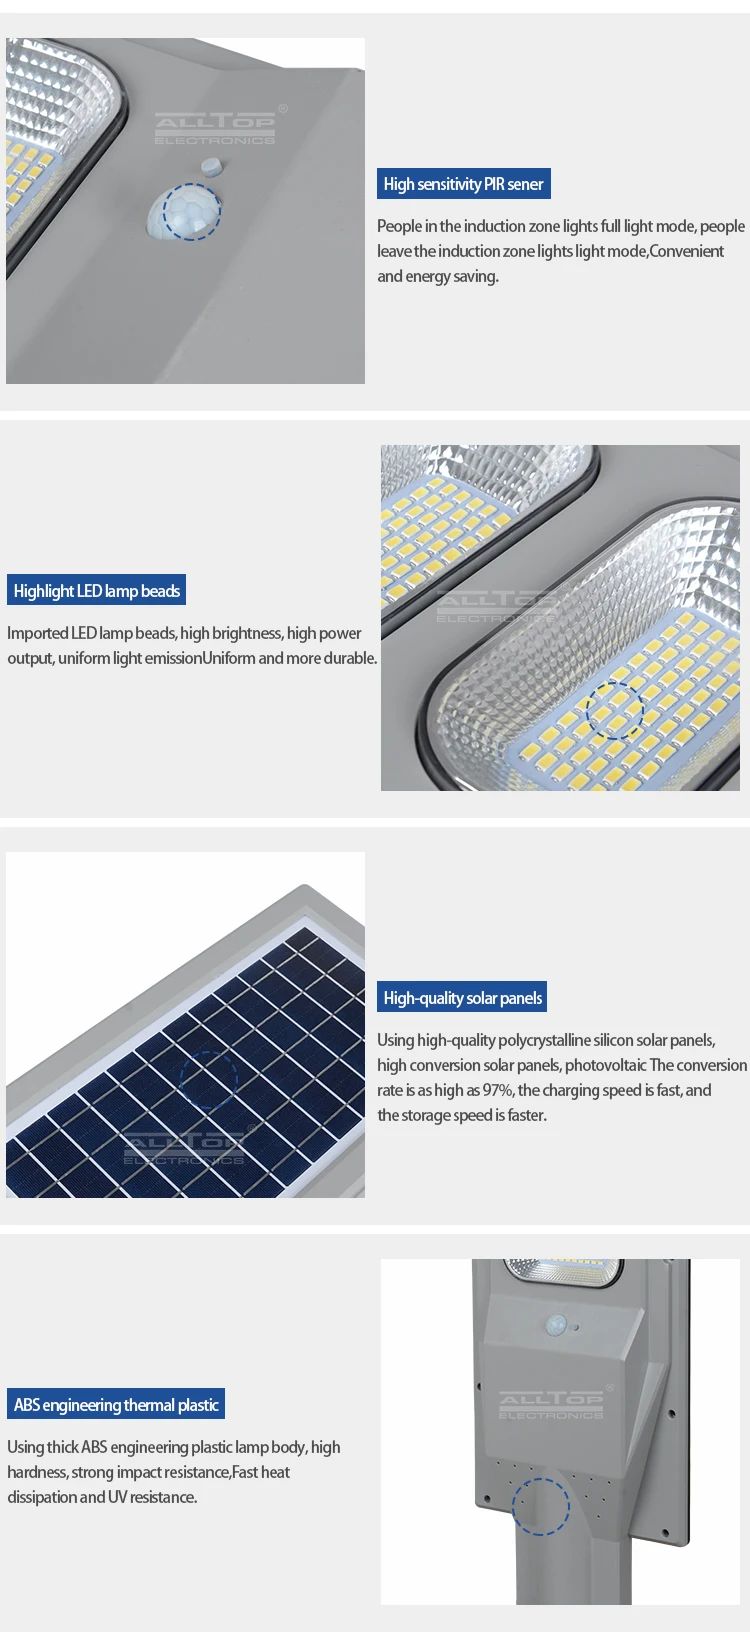 ALLTOP High efficiency waterproof IP65 solar panel module 30w 60w 90w 120w 150w all in one solar street light